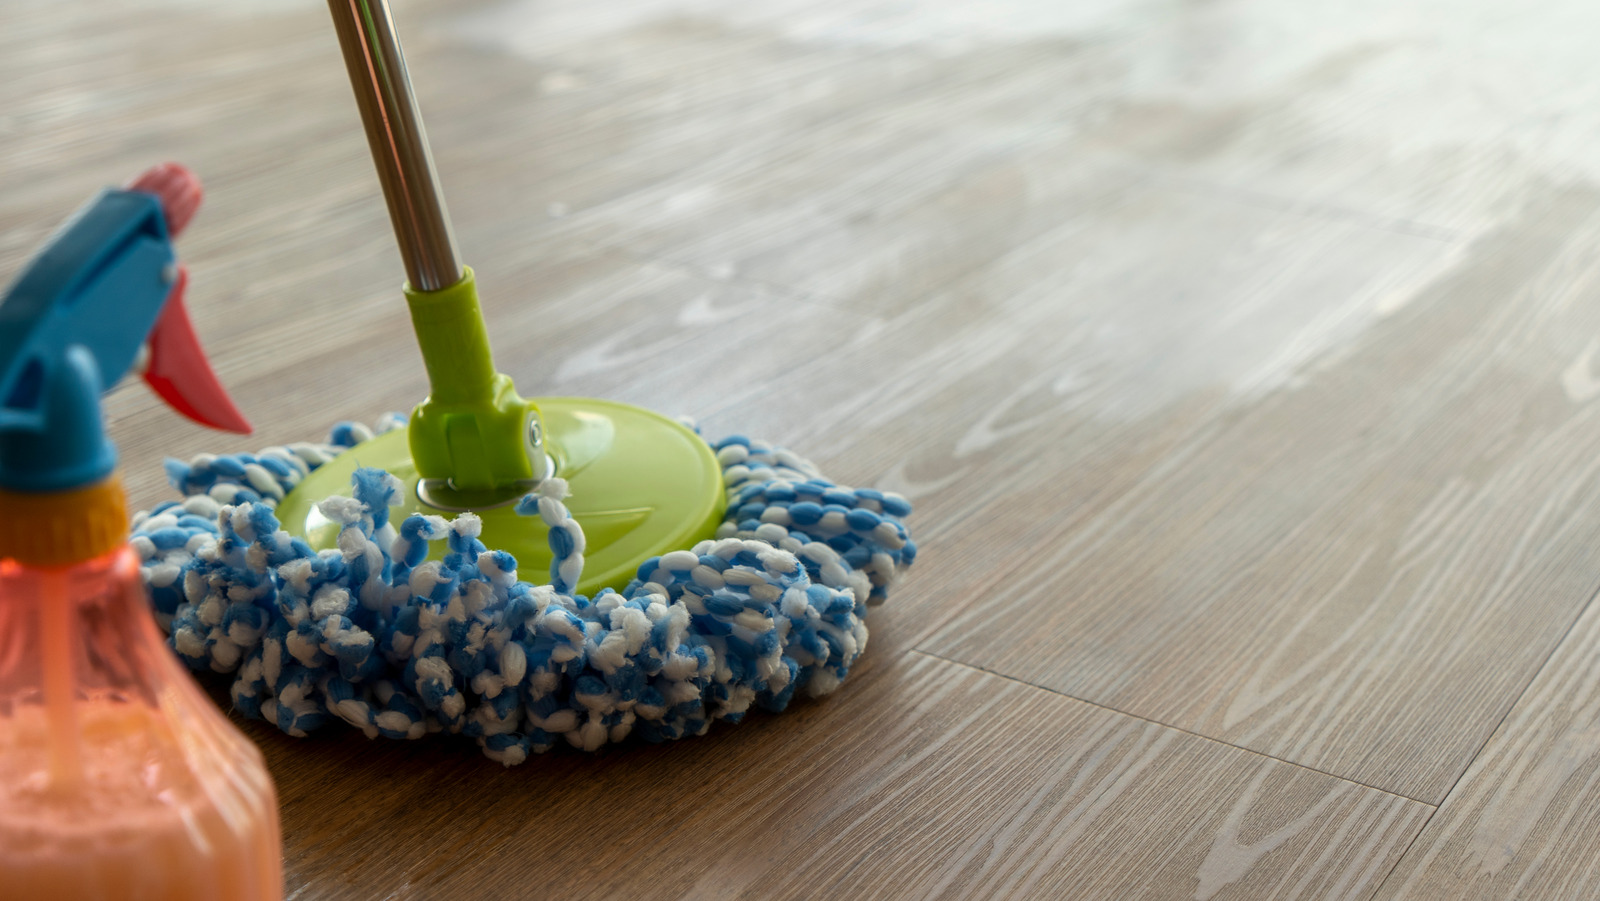 8 Easiest Ways To Clean Vinyl Floors, Home Remedies For Cleaning Vinyl Floors